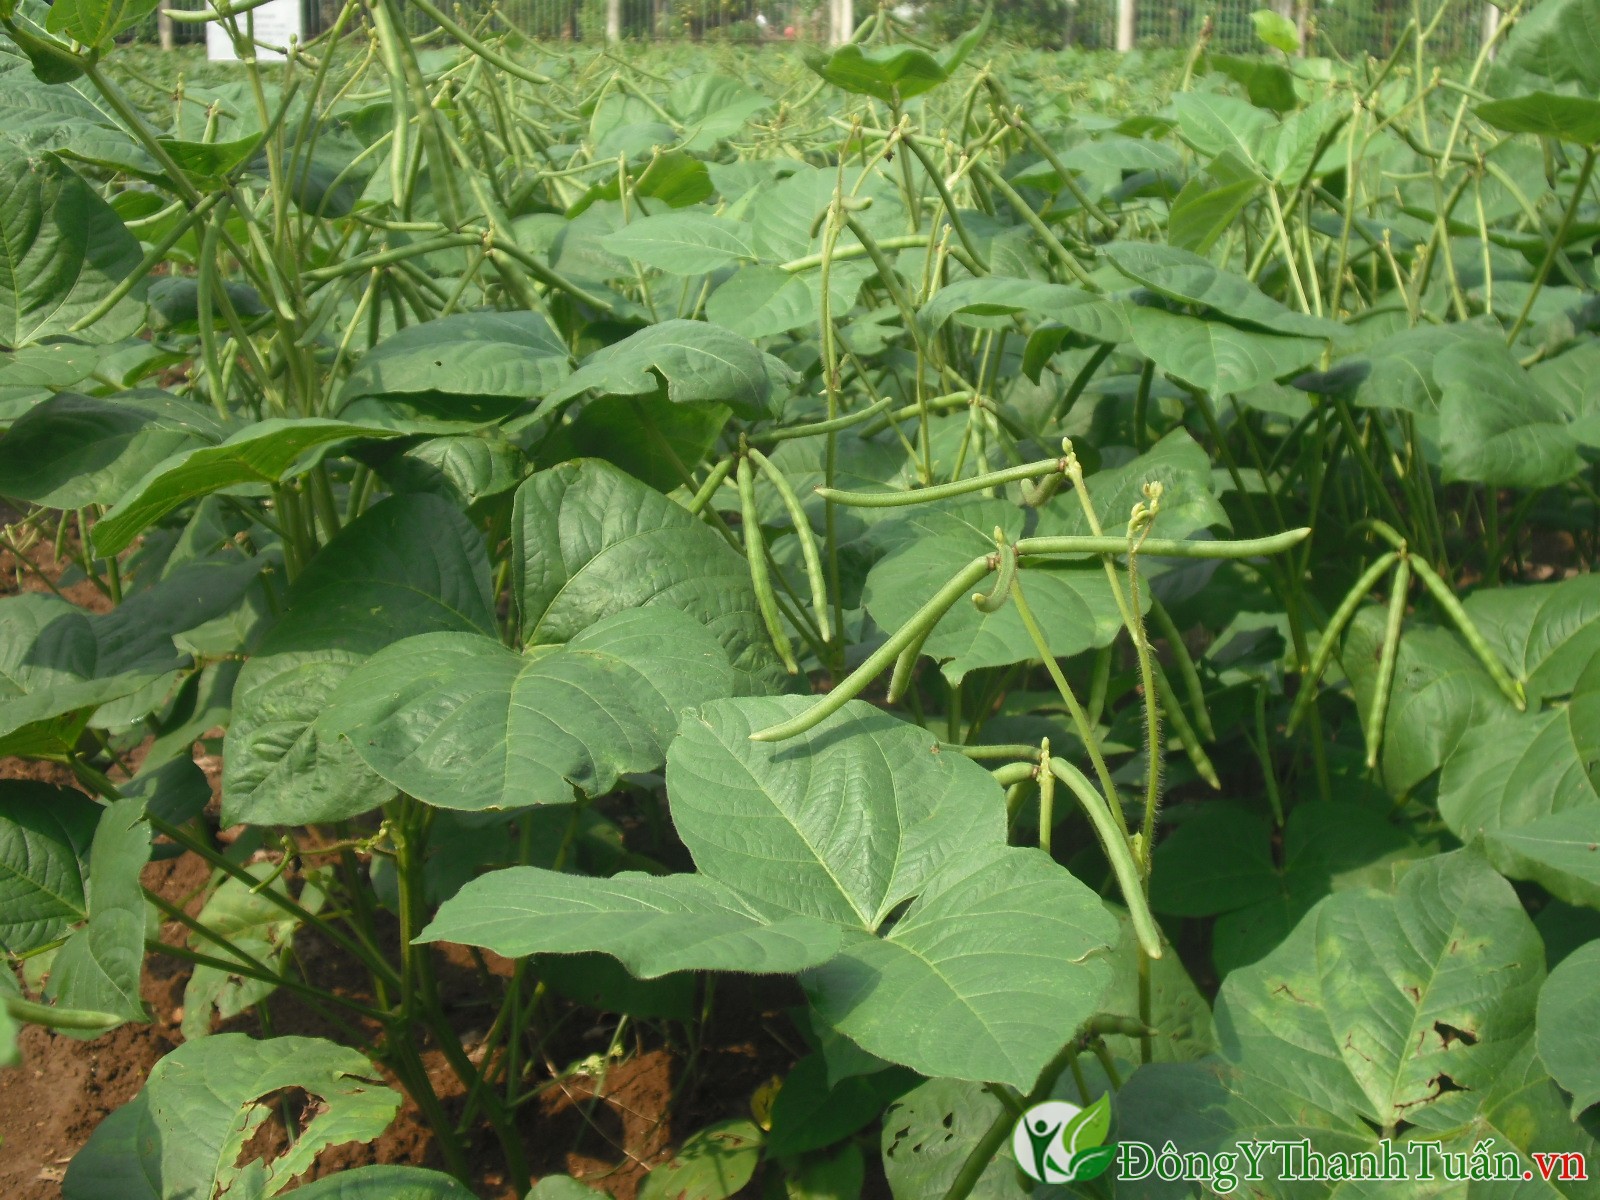 Cách chữa hôi miệng hiệu quả từ thiên nhiên bằng lá đậu xanh